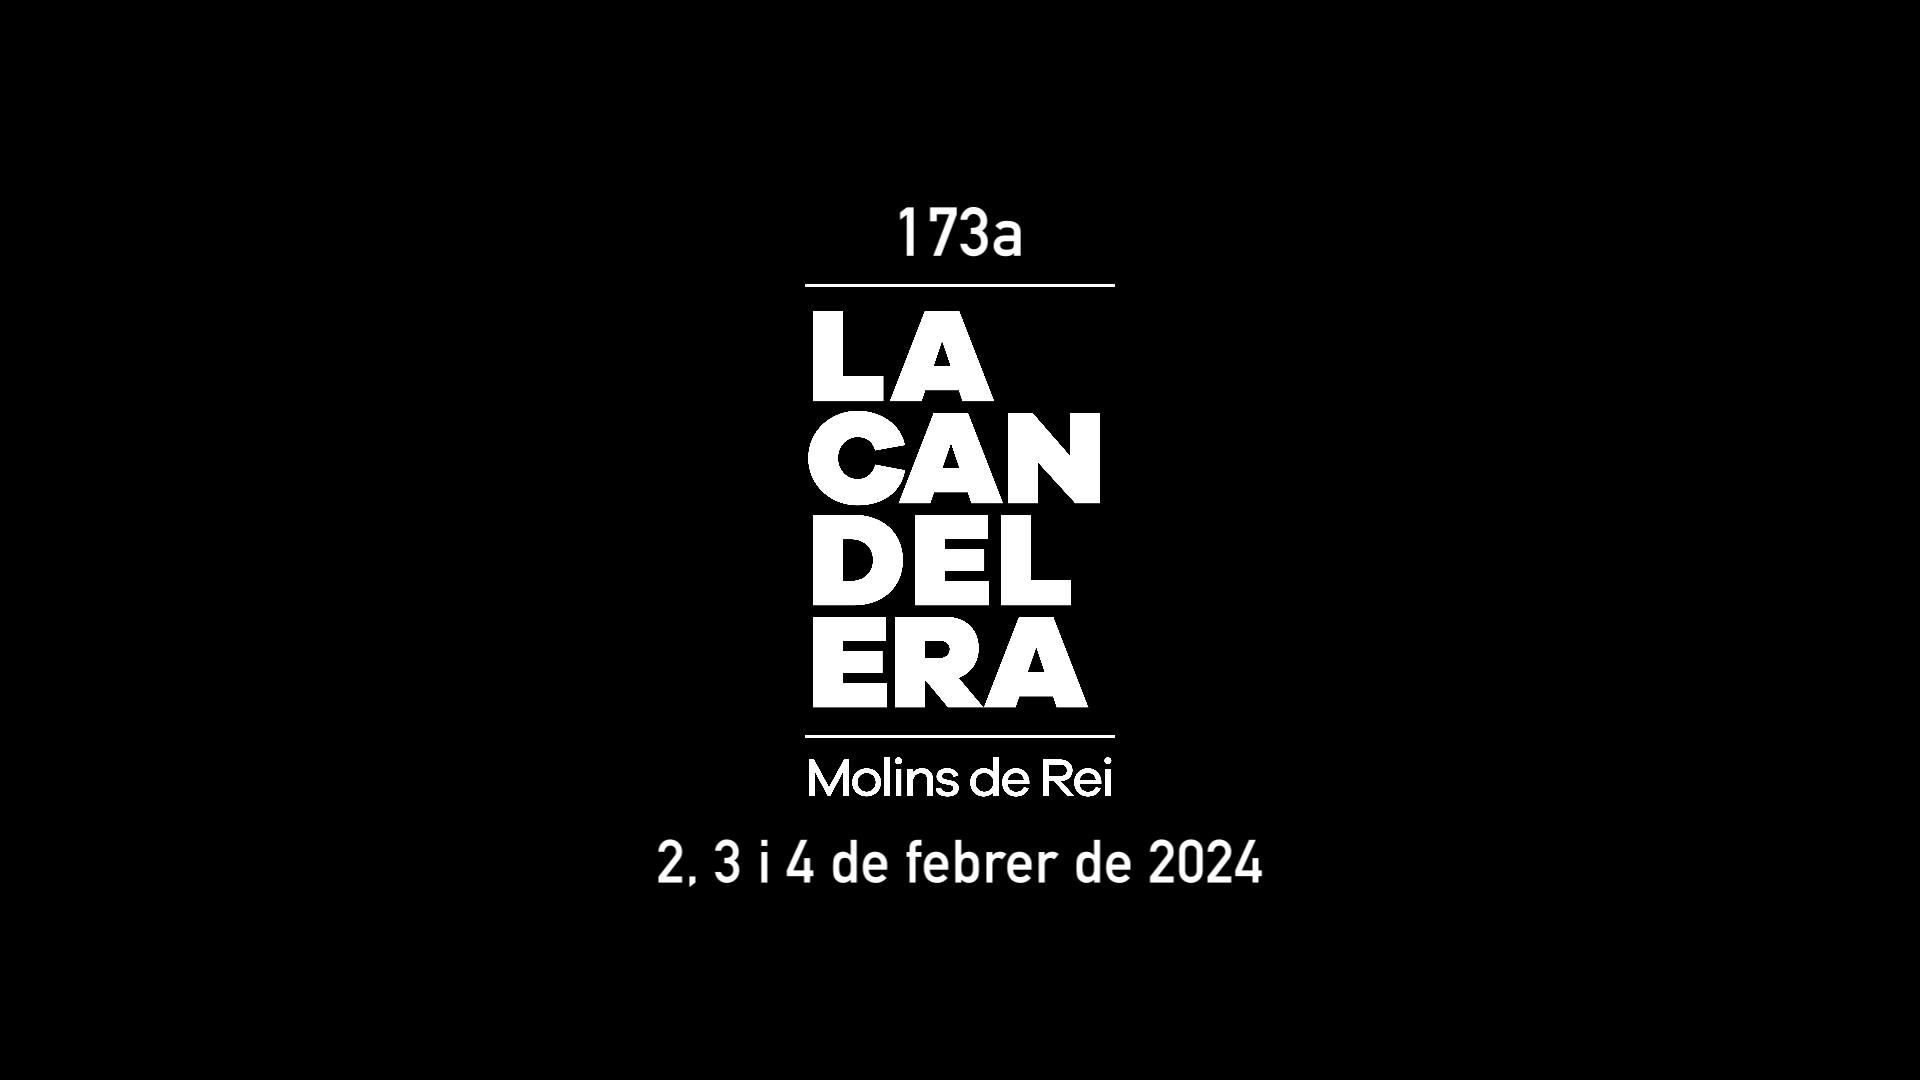 Pregó de la 173a FIRA DE LA CANDELERA